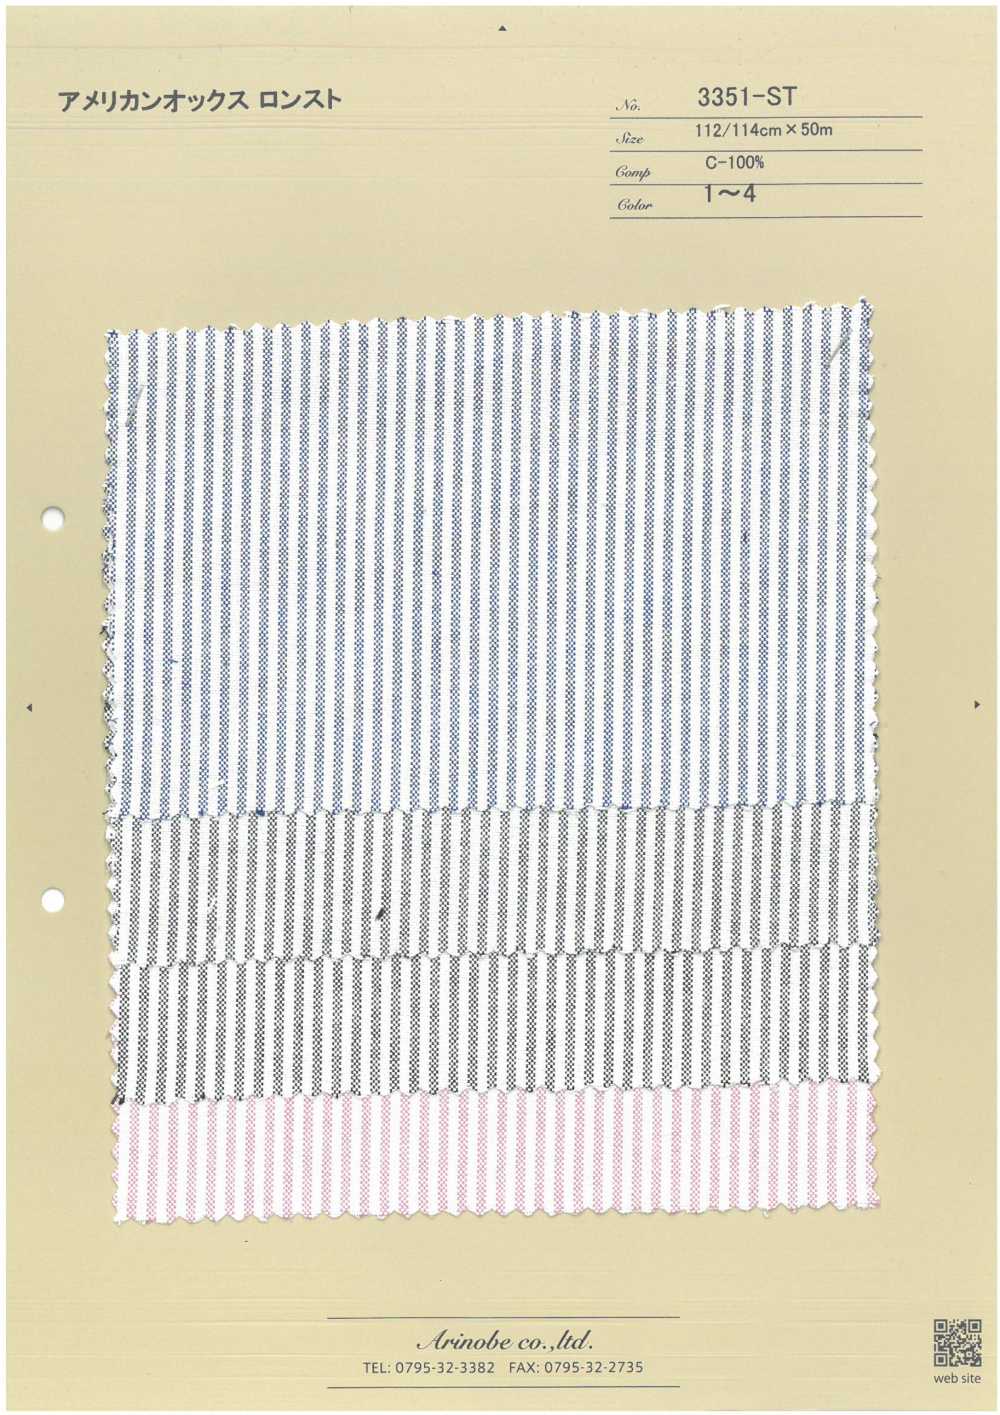 3351-ST Amerikanisches Oxford[Textilgewebe] ARINOBE CO., LTD.